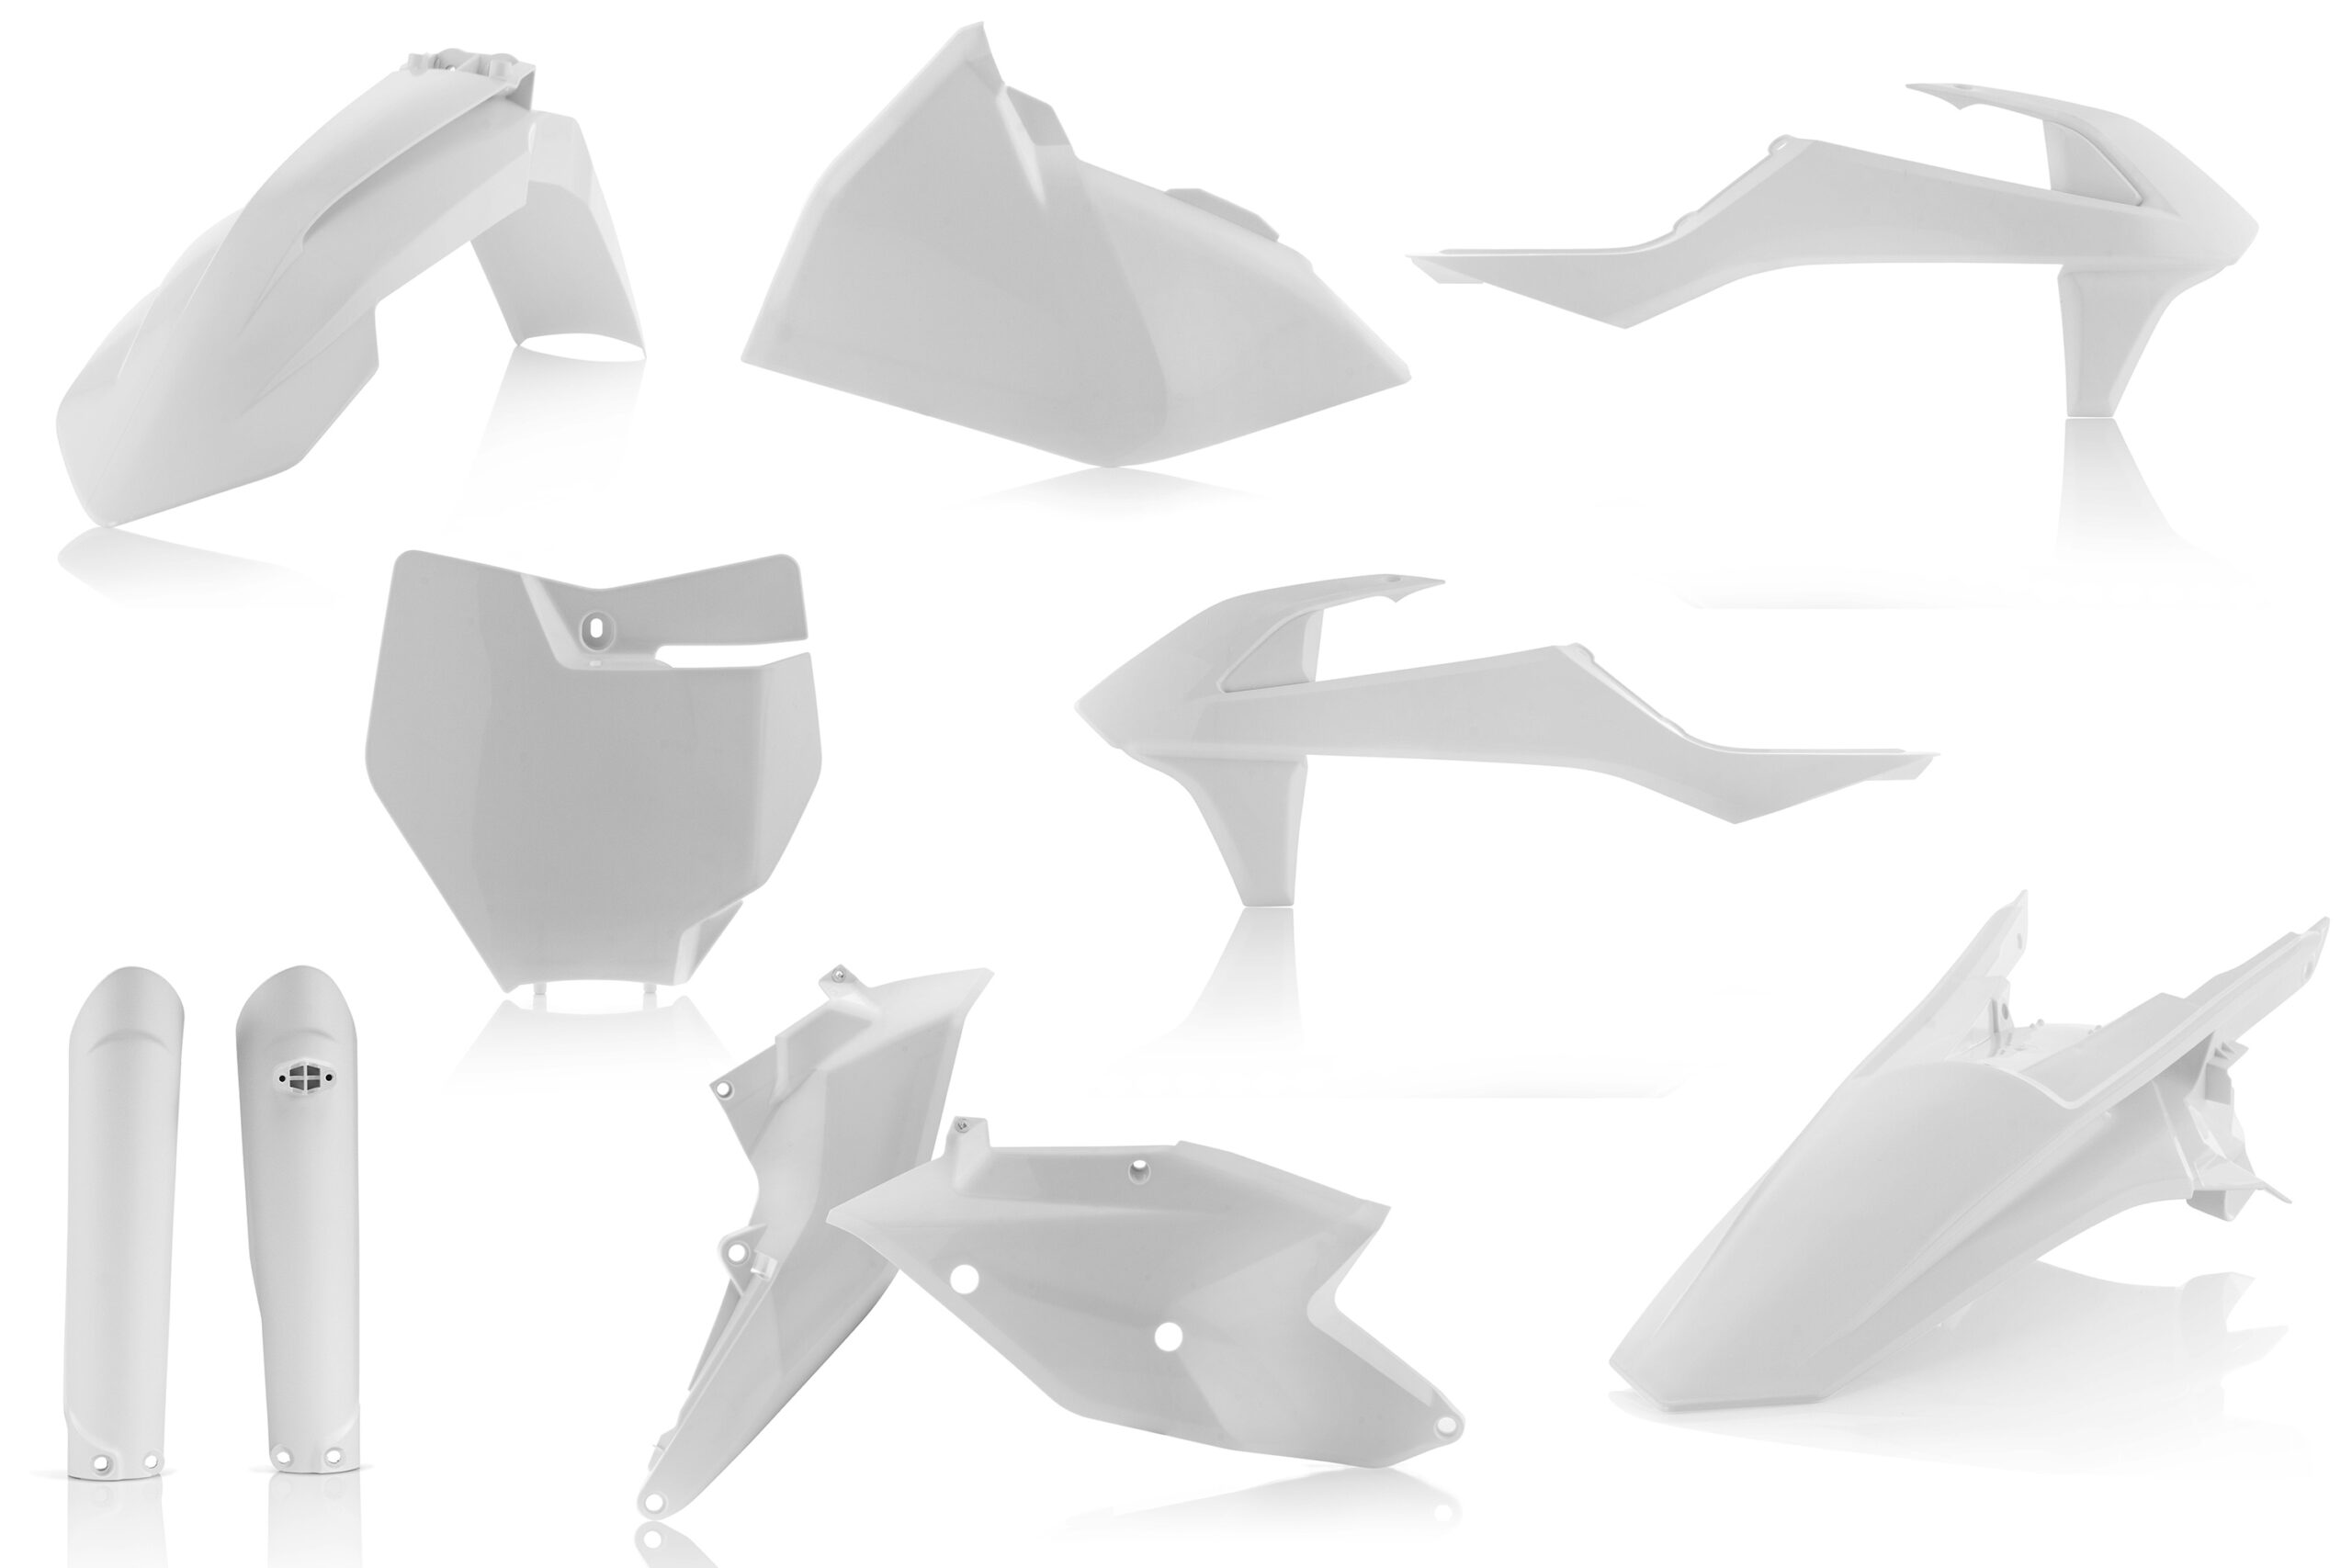 Plastikteile für deine KTM SX / SX-F 125-450 in weiß bestehend aus Kotflügel vorn Kotflügel hinten Kühlerspoiler Seitenteile Gabelschützer Startnummerntafel Air Box Cover